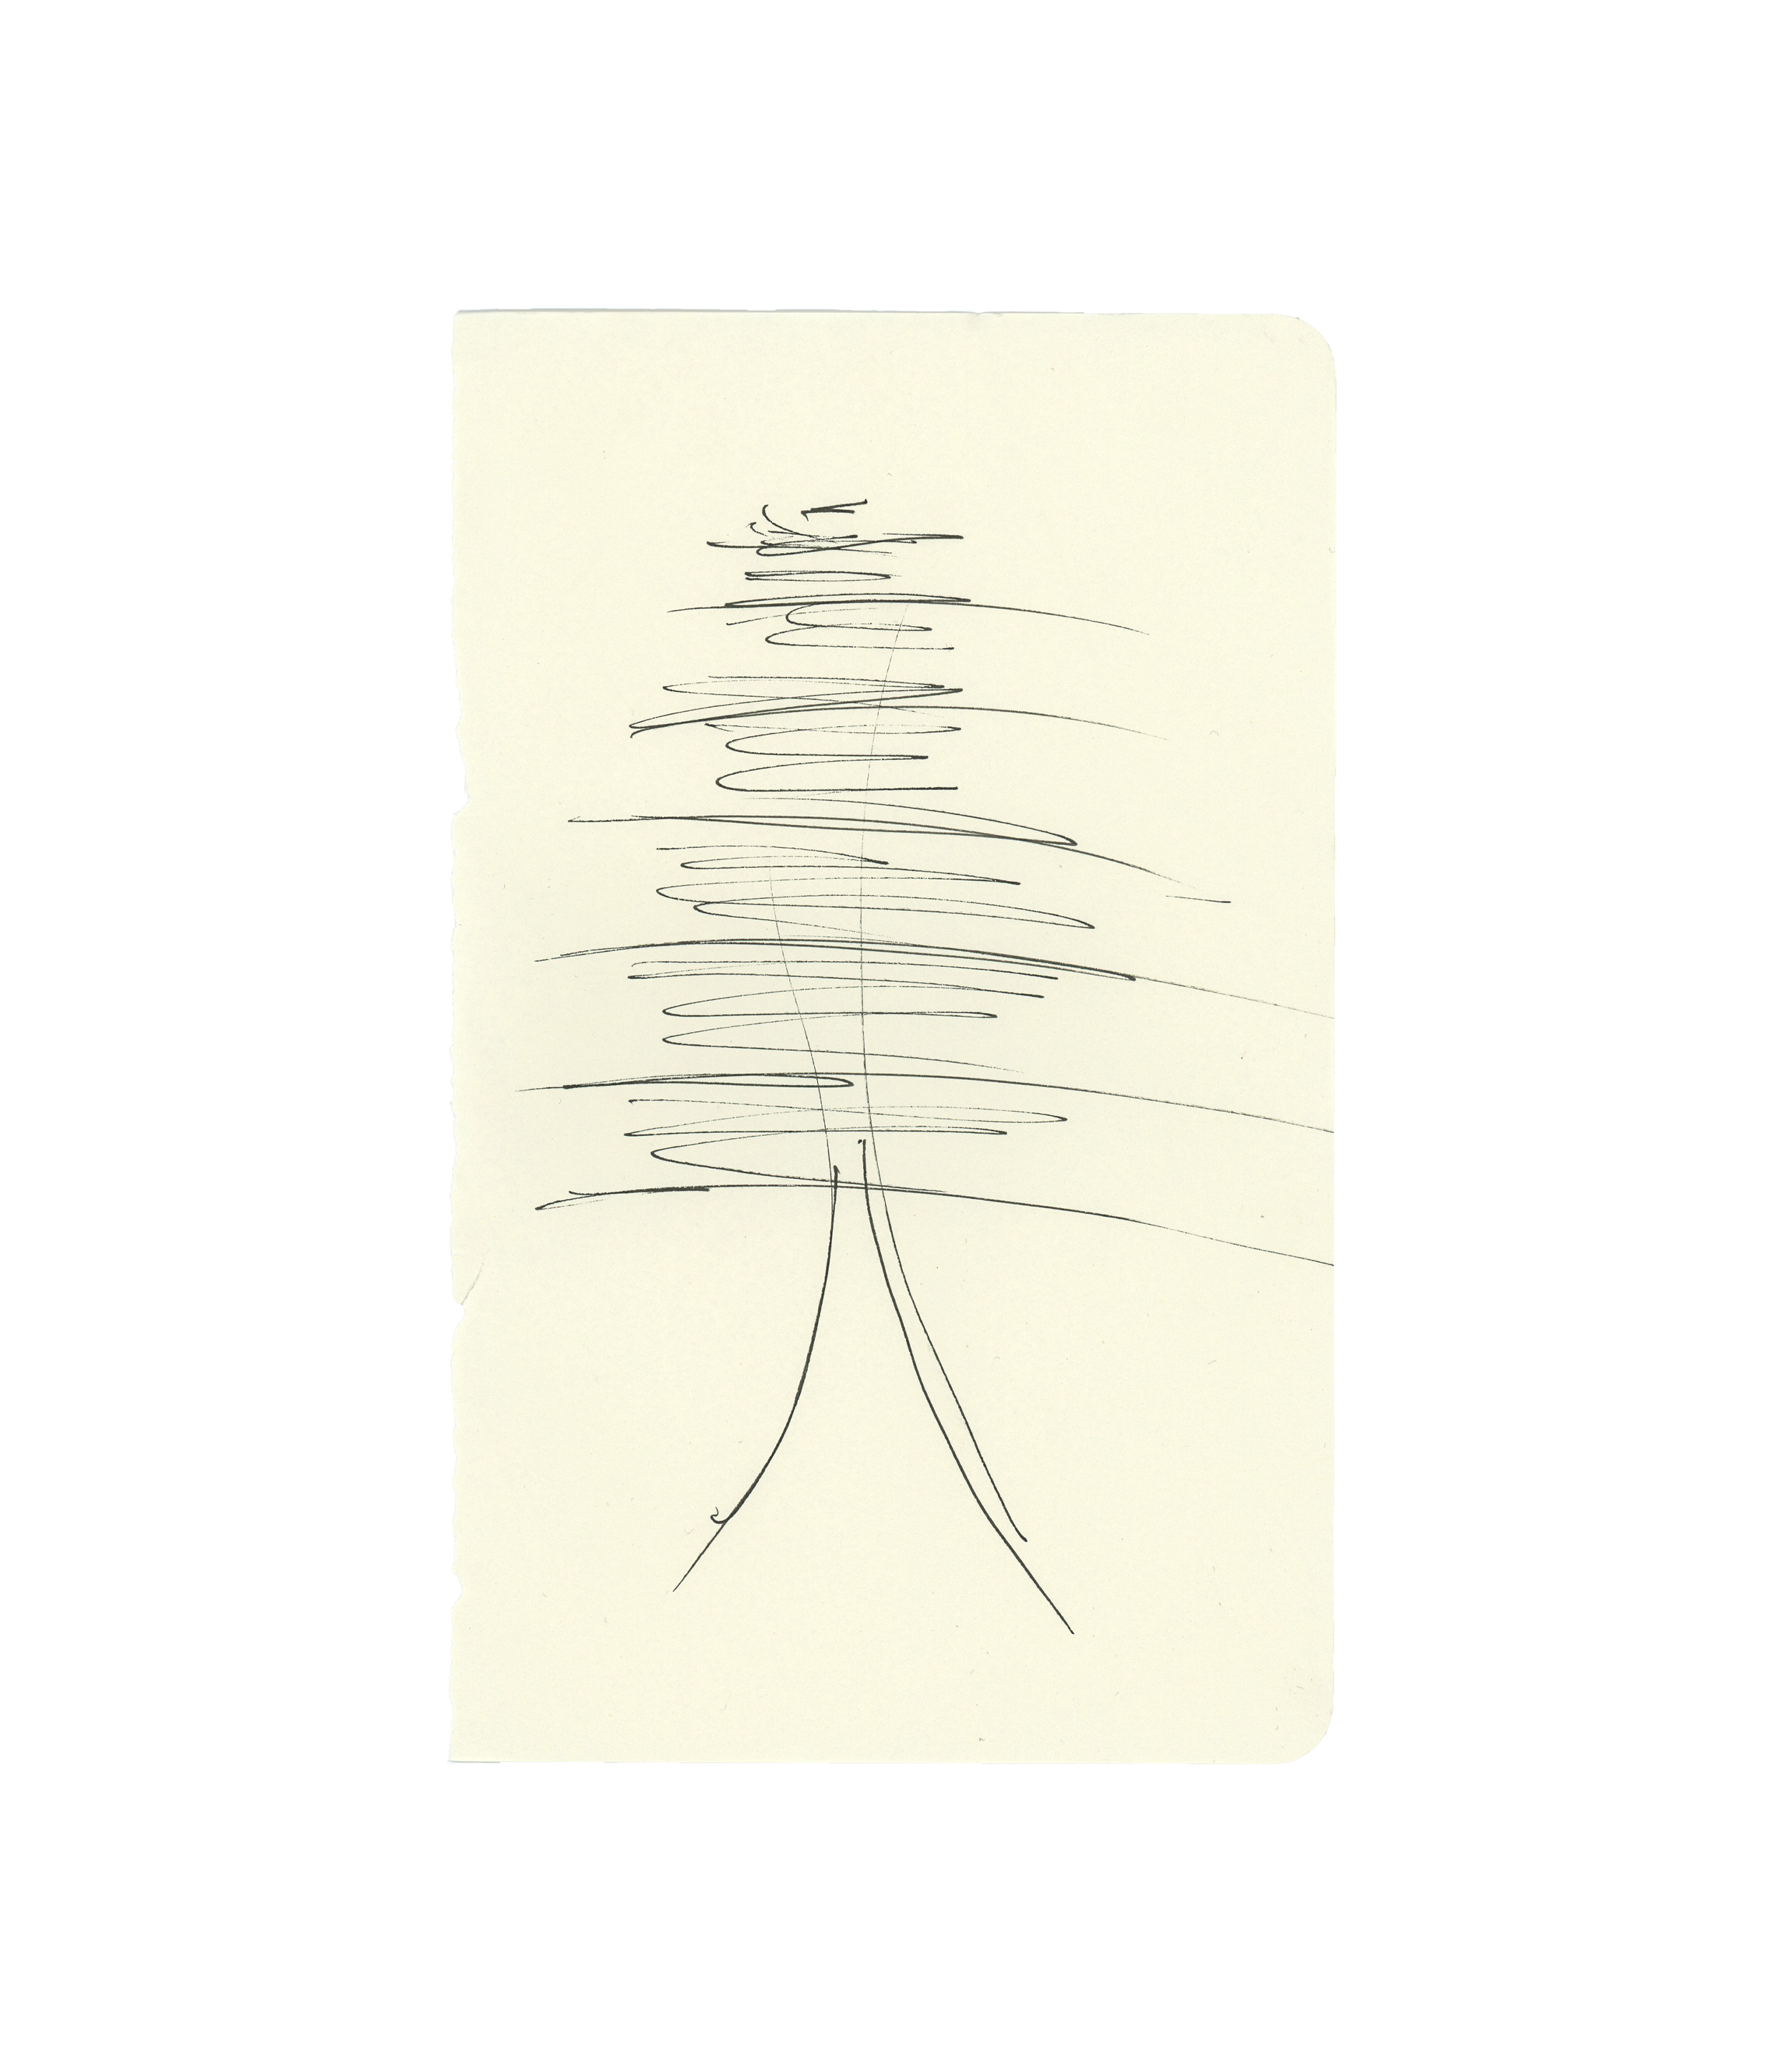  Pine drawing No. 2 - Allen 